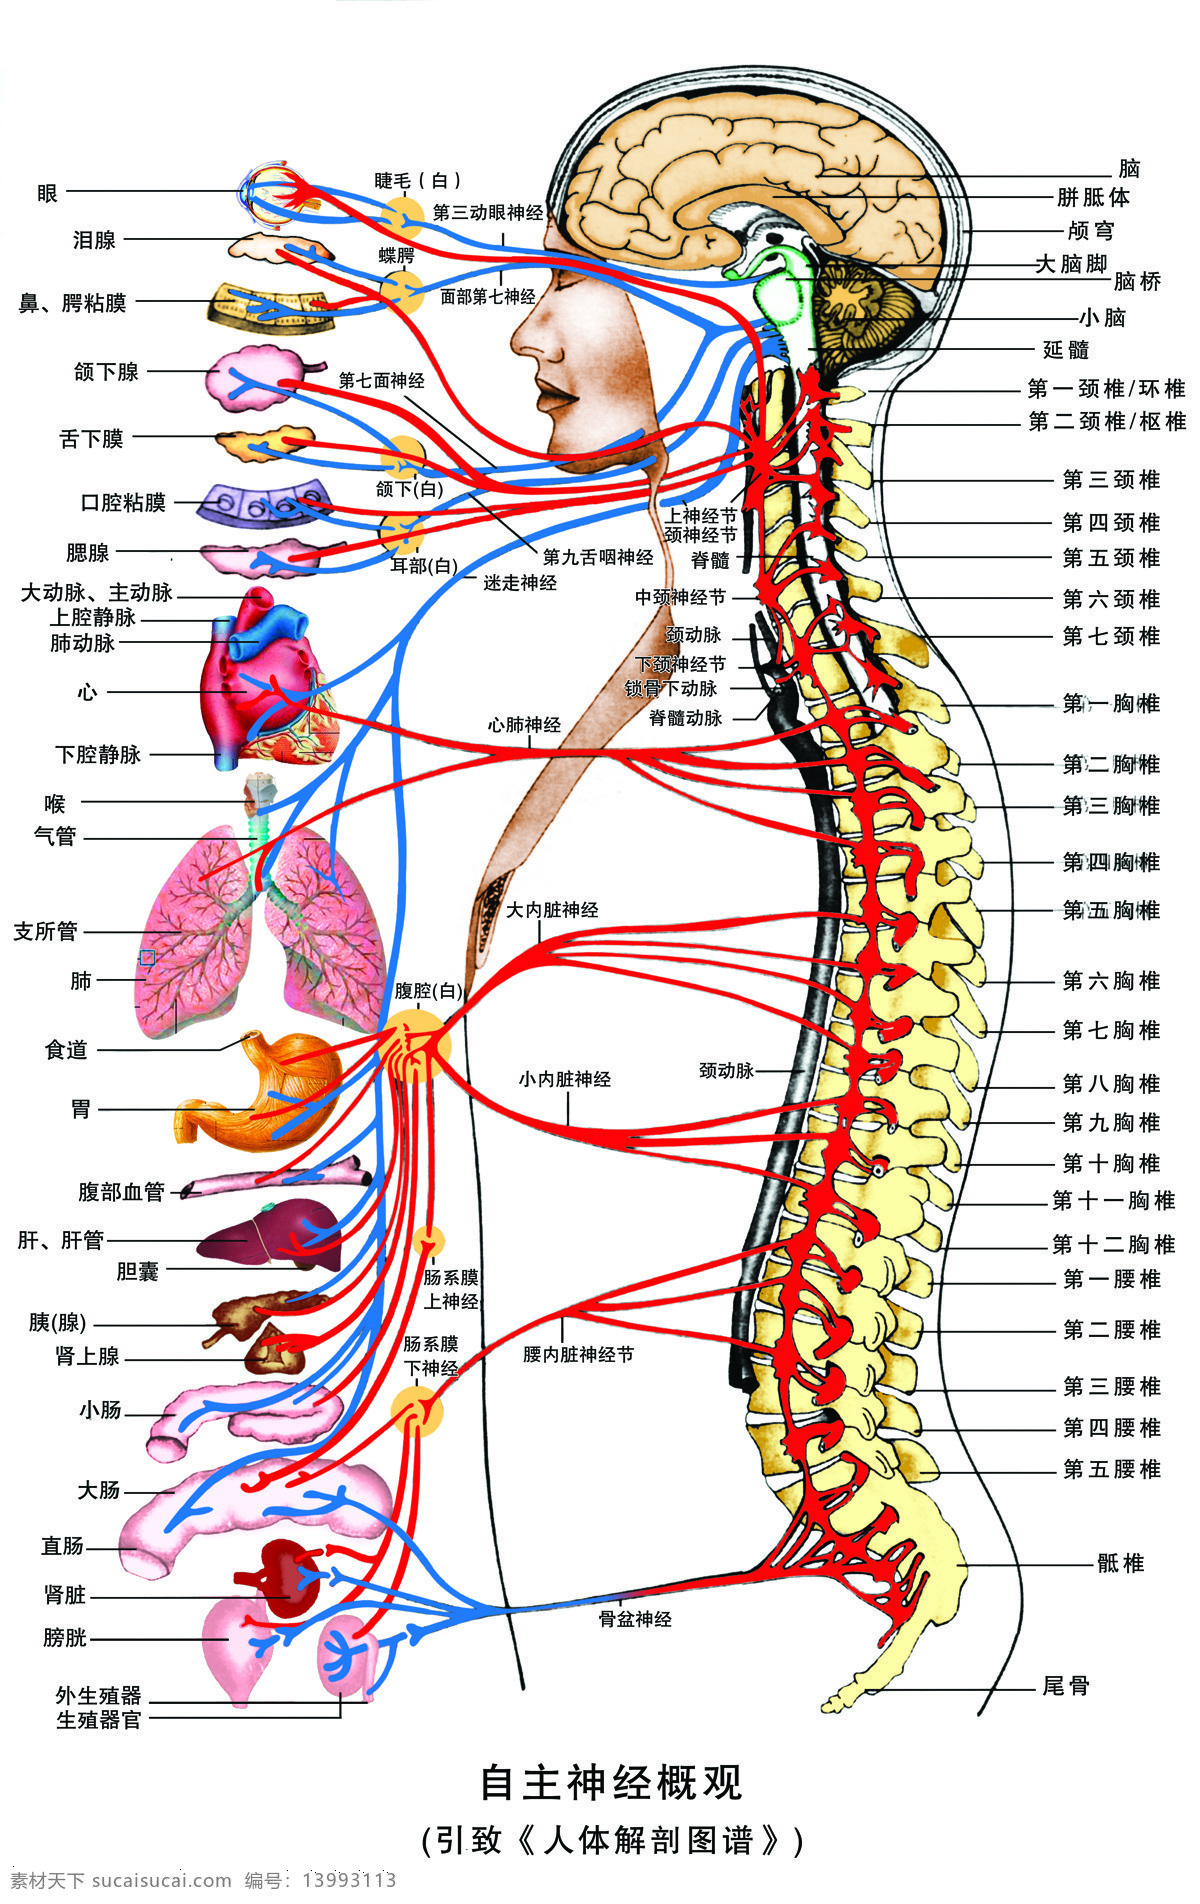 自主神经概观 脊椎名称 内脏名称 上身 主 神经 分布图 生活百科 设计图库